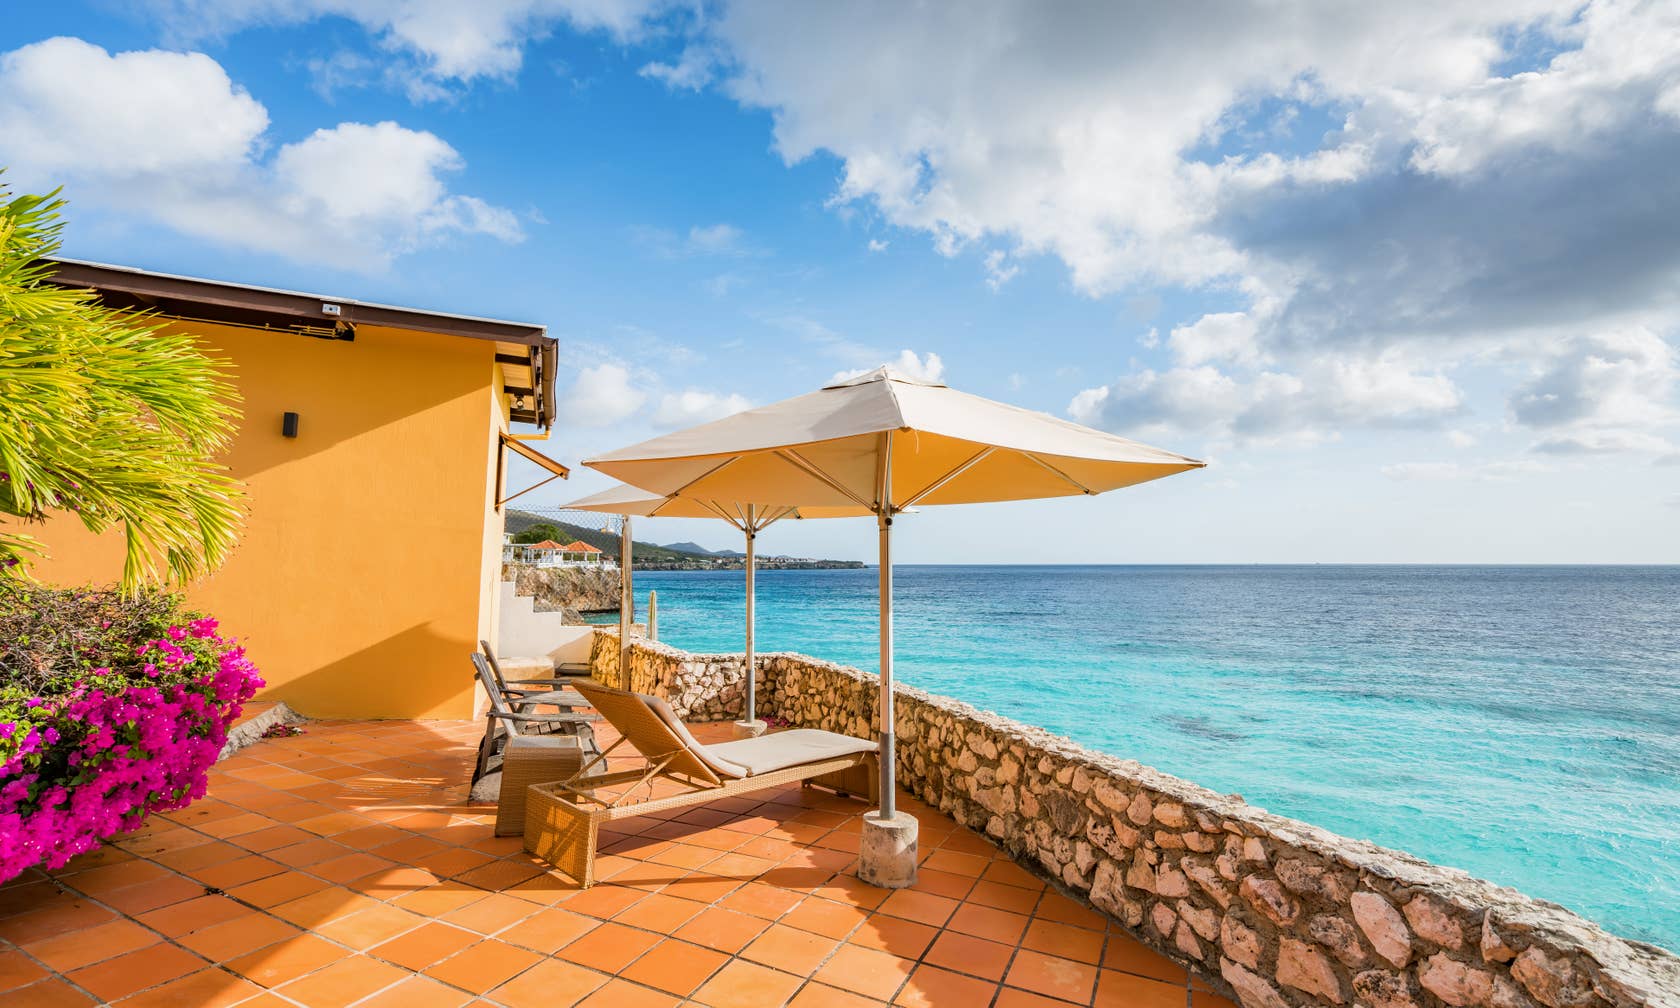 Bérbeadó nyaralók itt: Curaçao